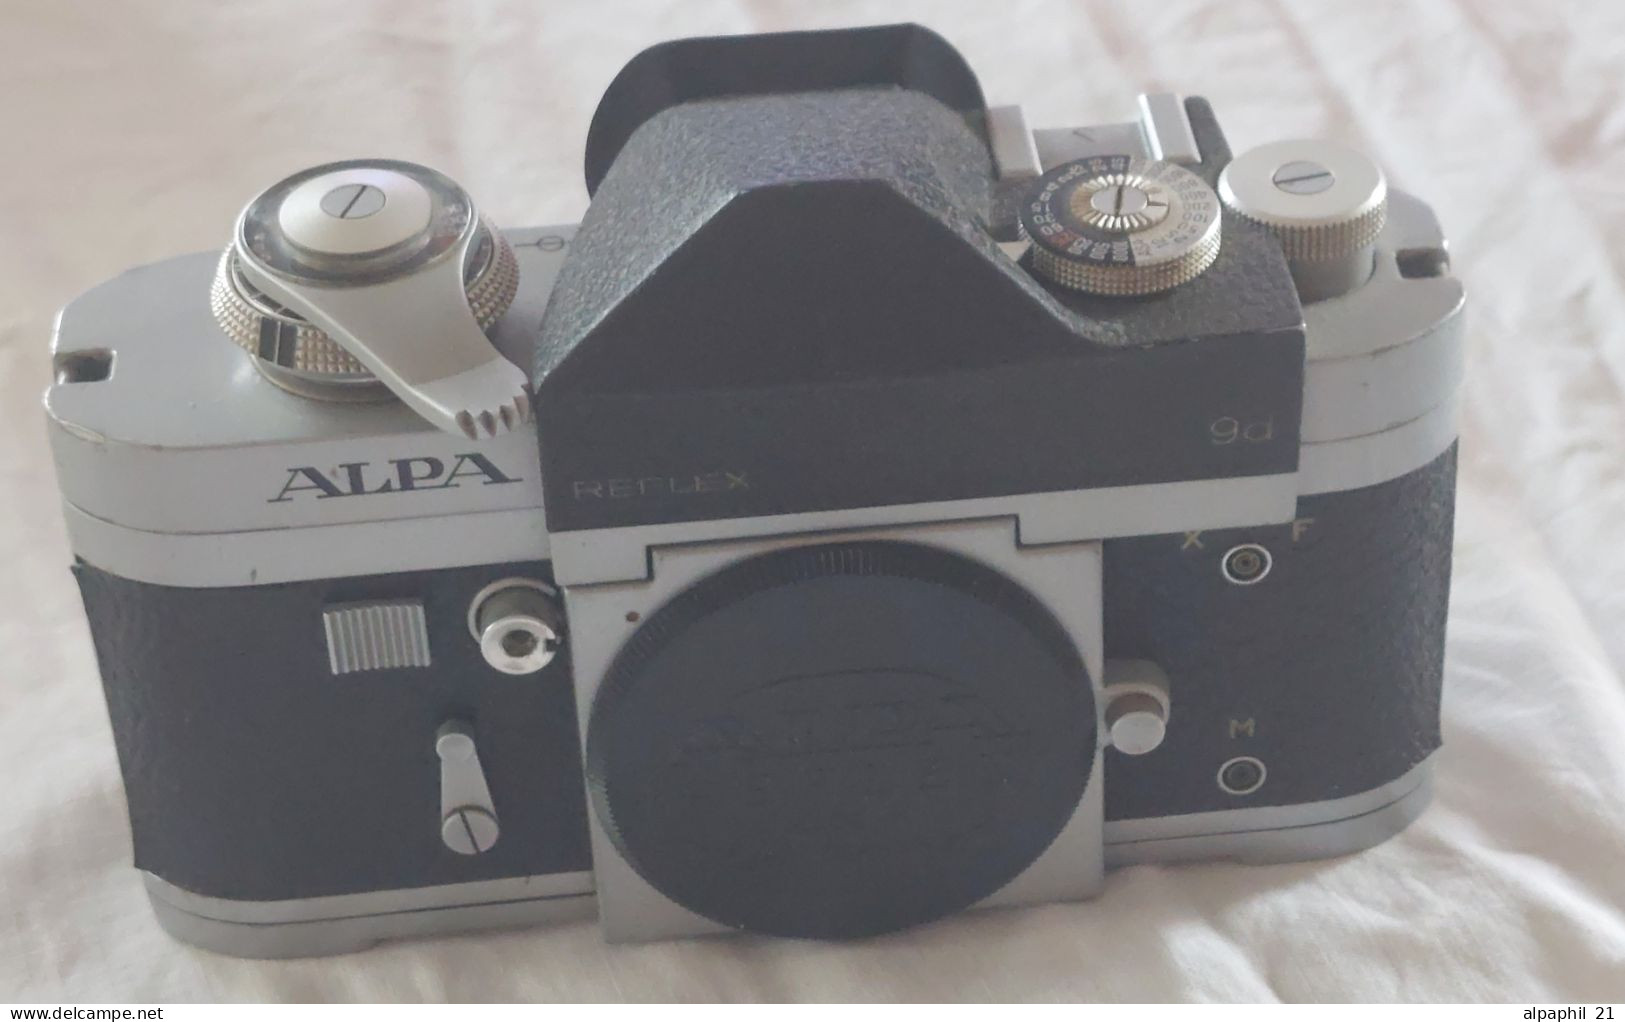 Alpa Reflex 9d - Cameras